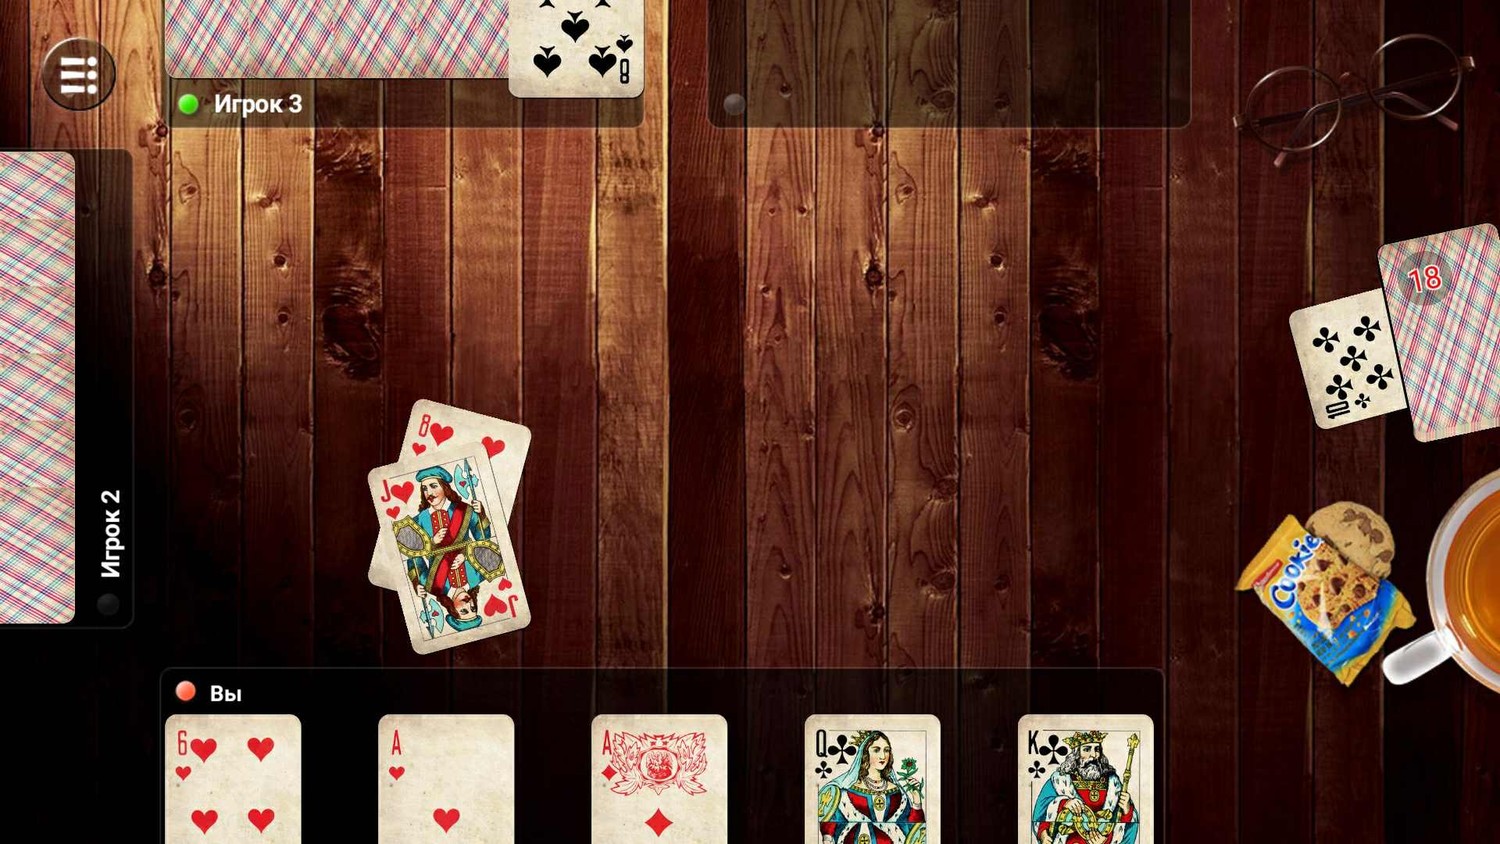 Игра в карты в дурака онлайн бесплатно играть казино vegas отзывы